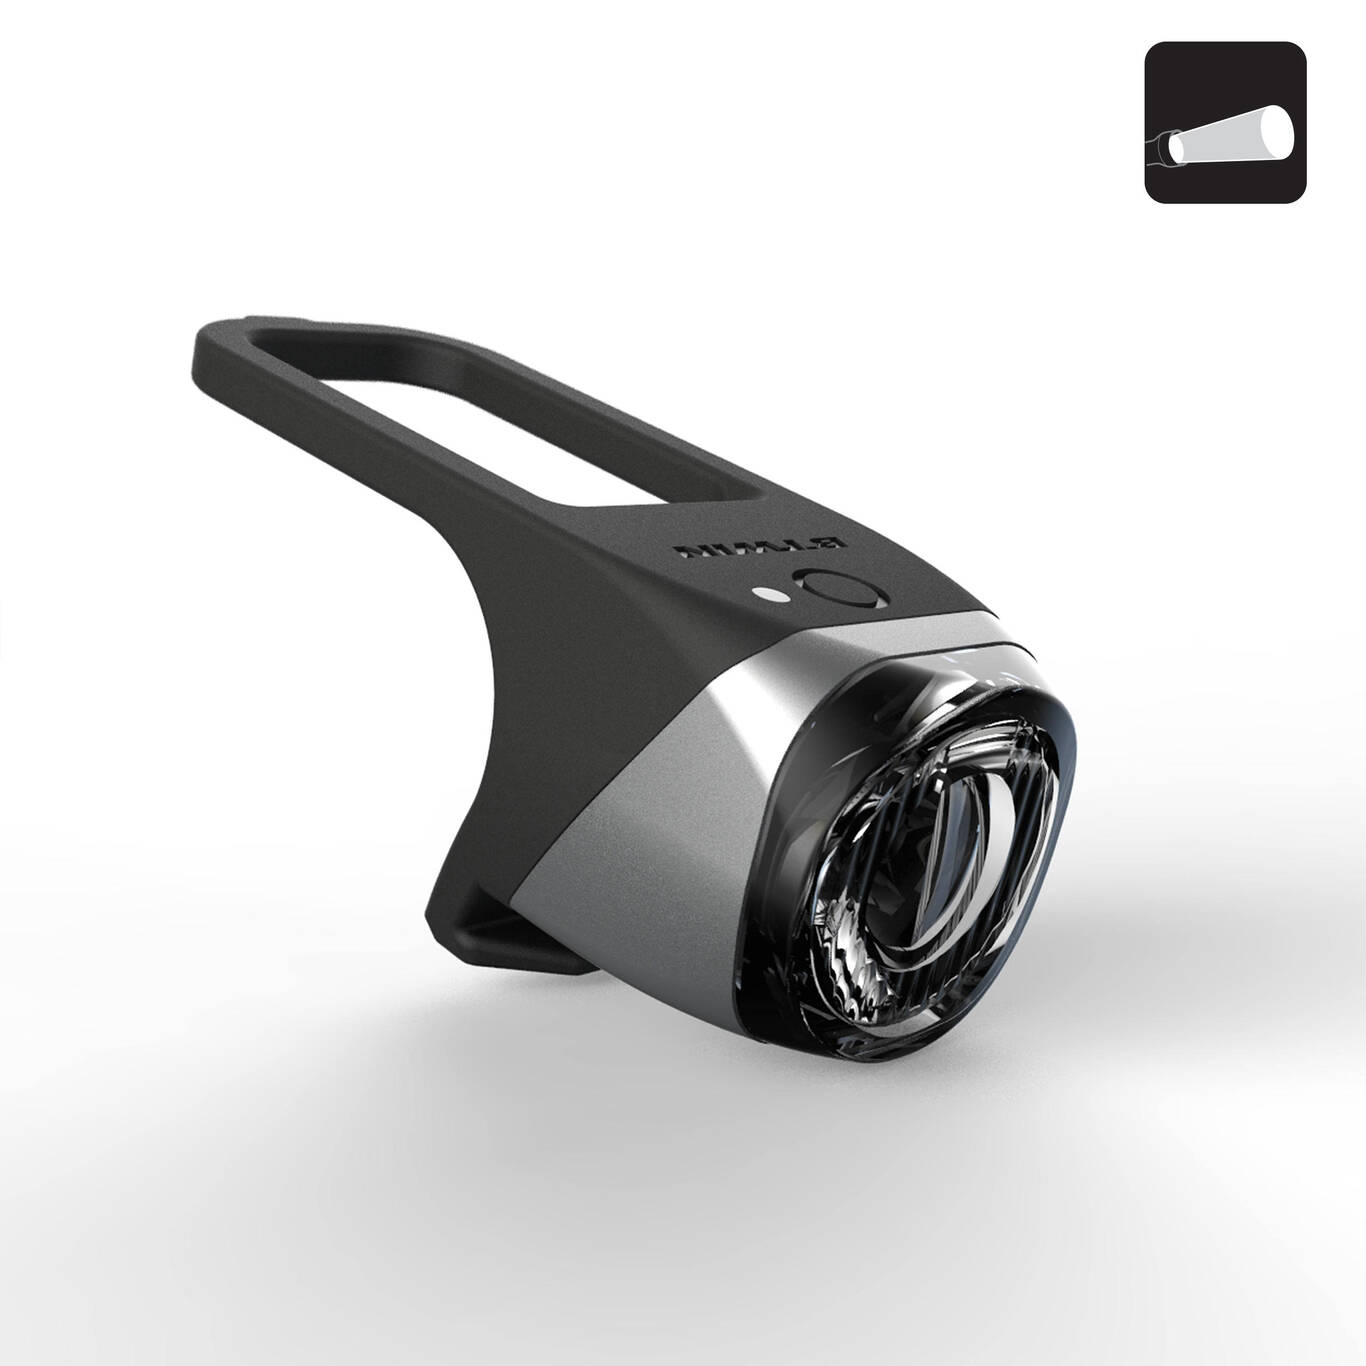 FL 900 Lampu Sepeda LED USB Depan - Hitam